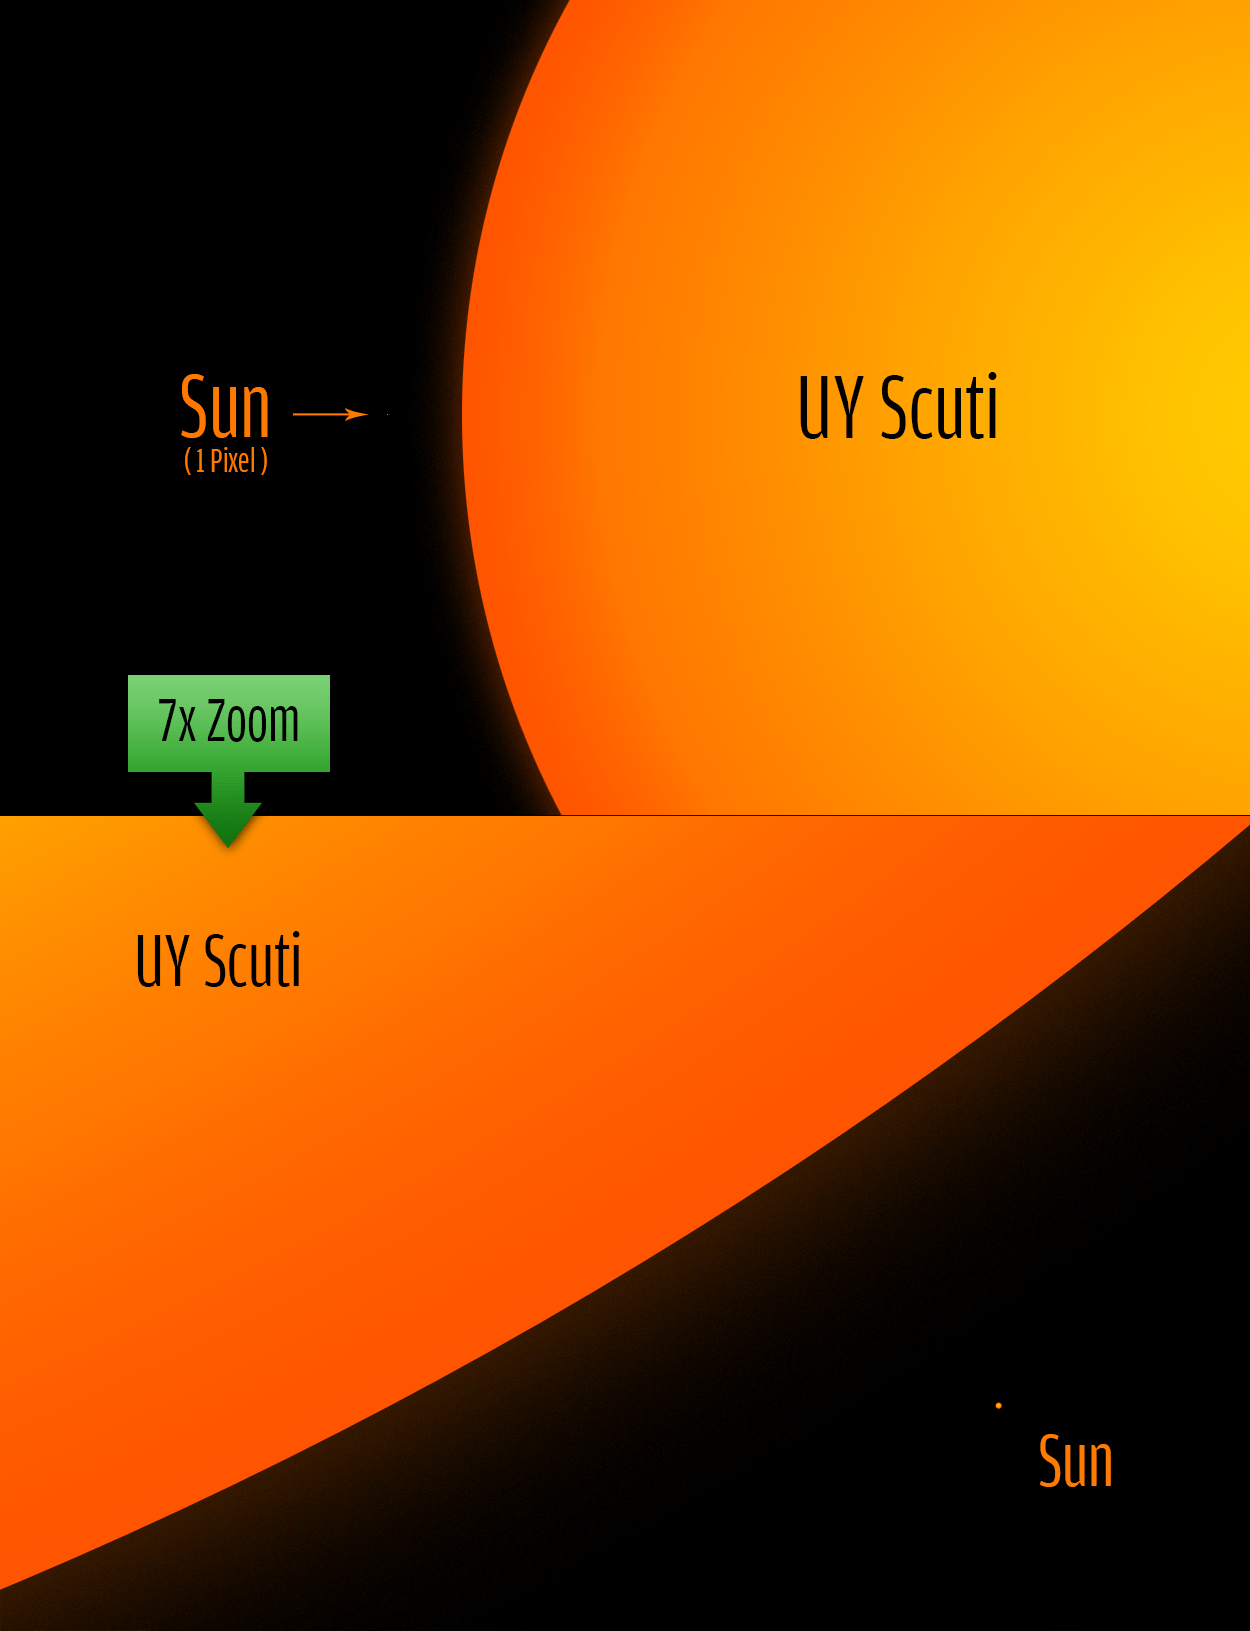 UY_Scuti_size_comparison_to_the_sun-1.png